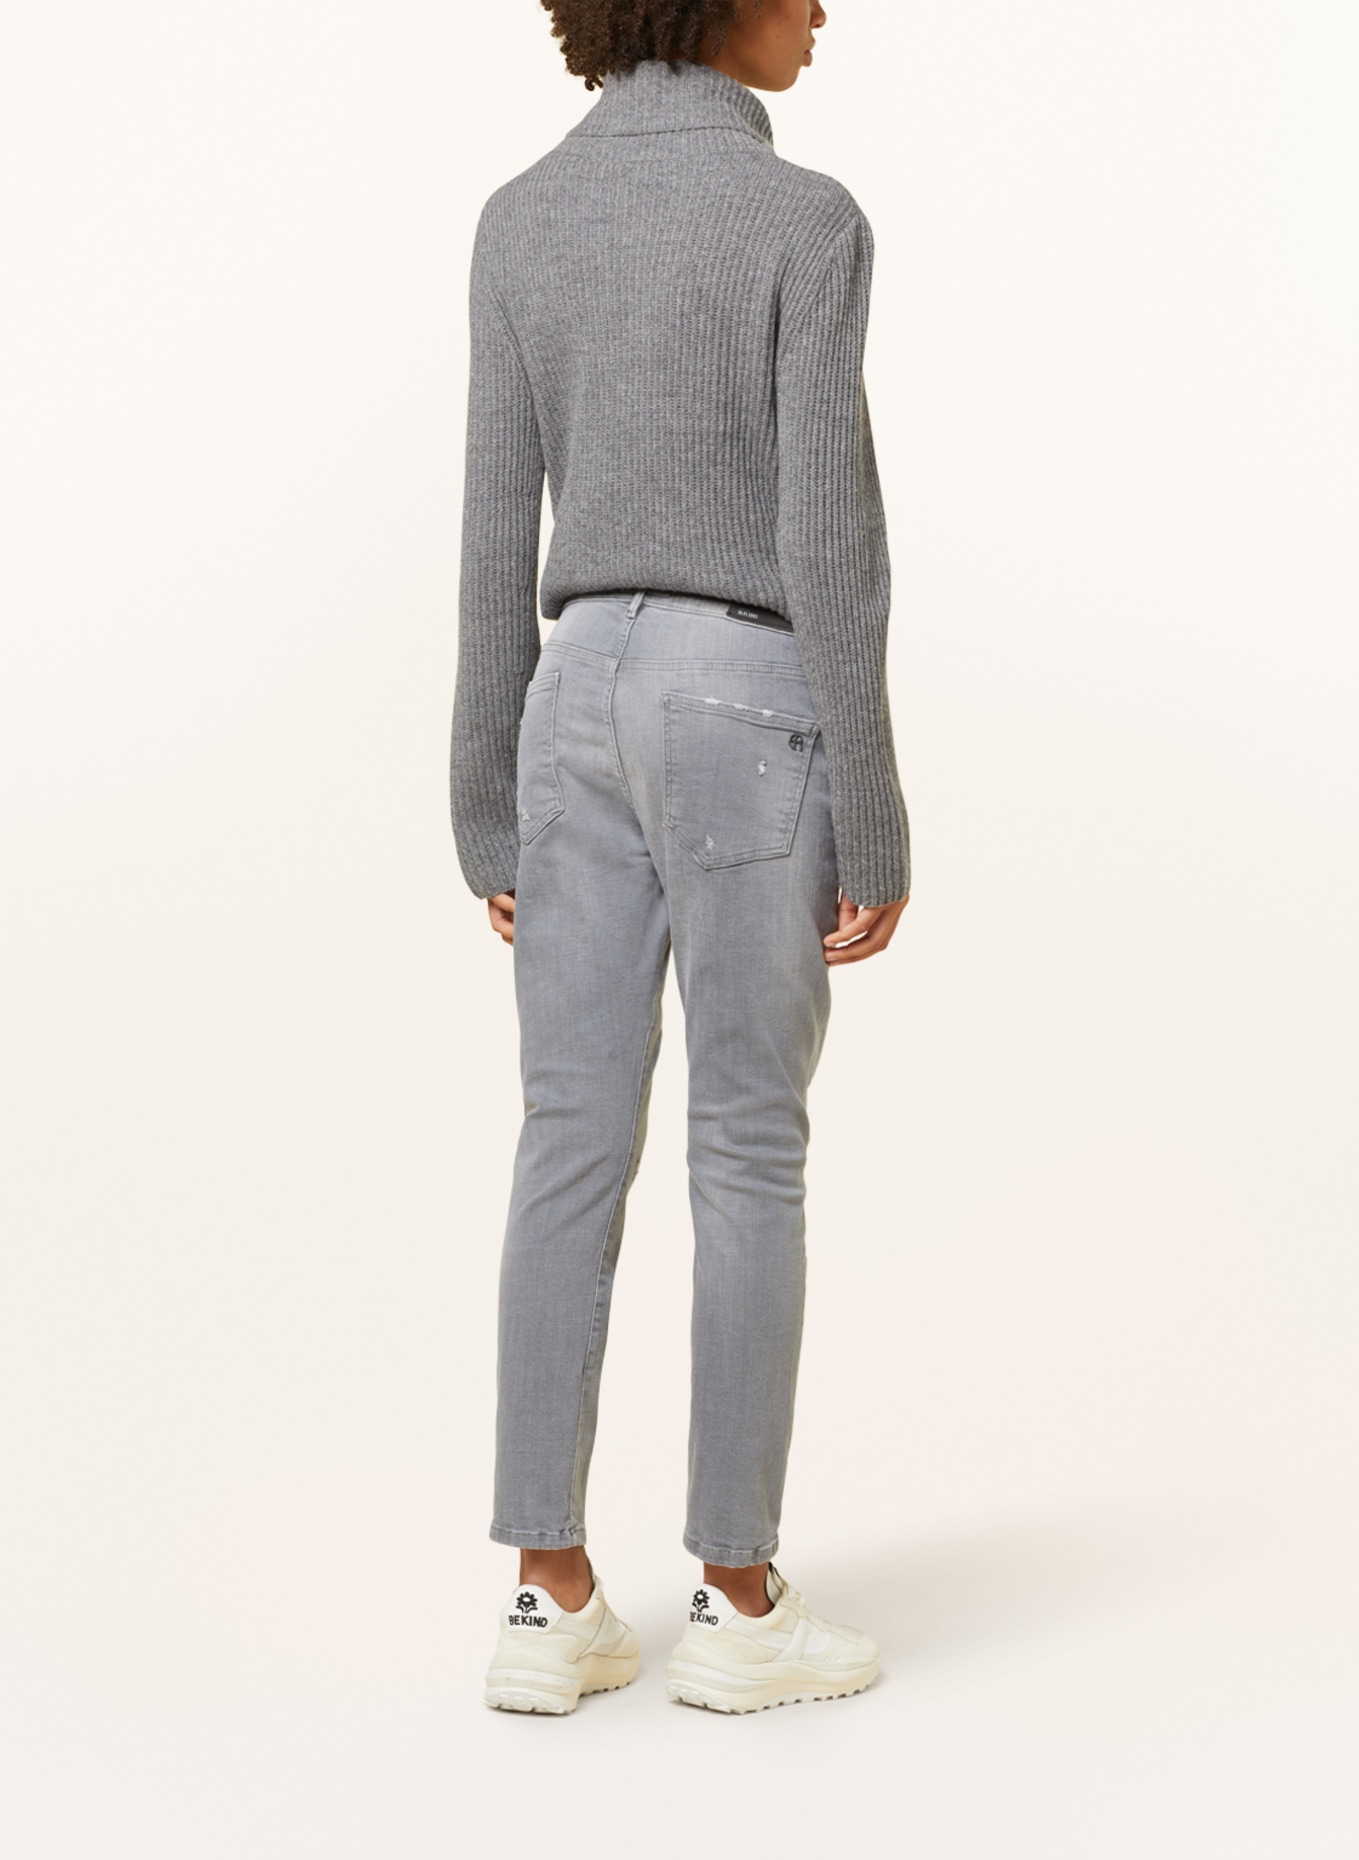 ELIAS RUMELIS Boyfriend jeans LANI, Color: 676 pale grey (Image 3)